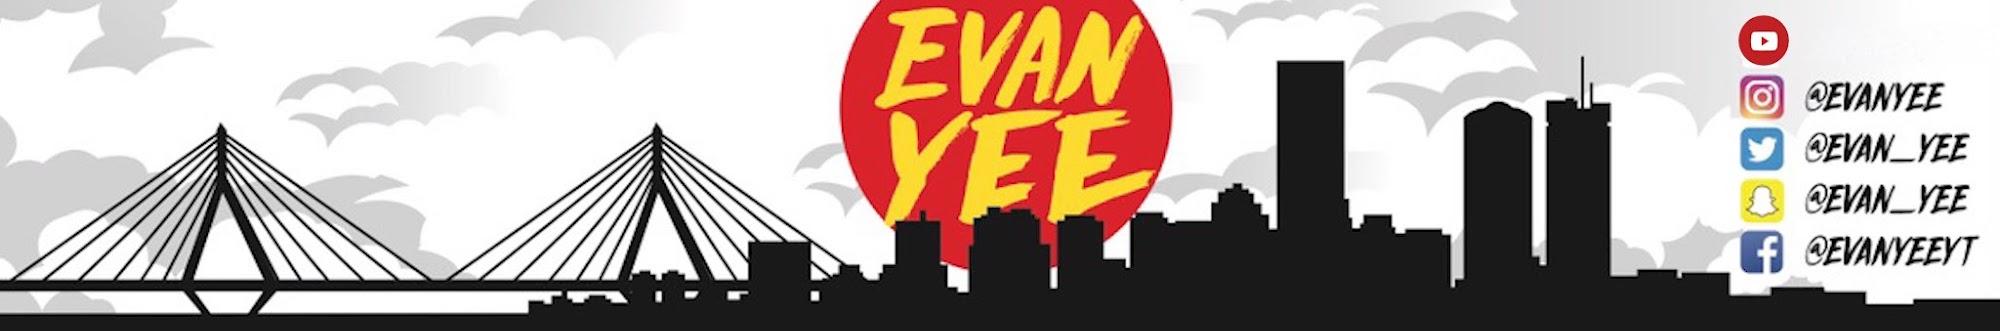 Evan Yee